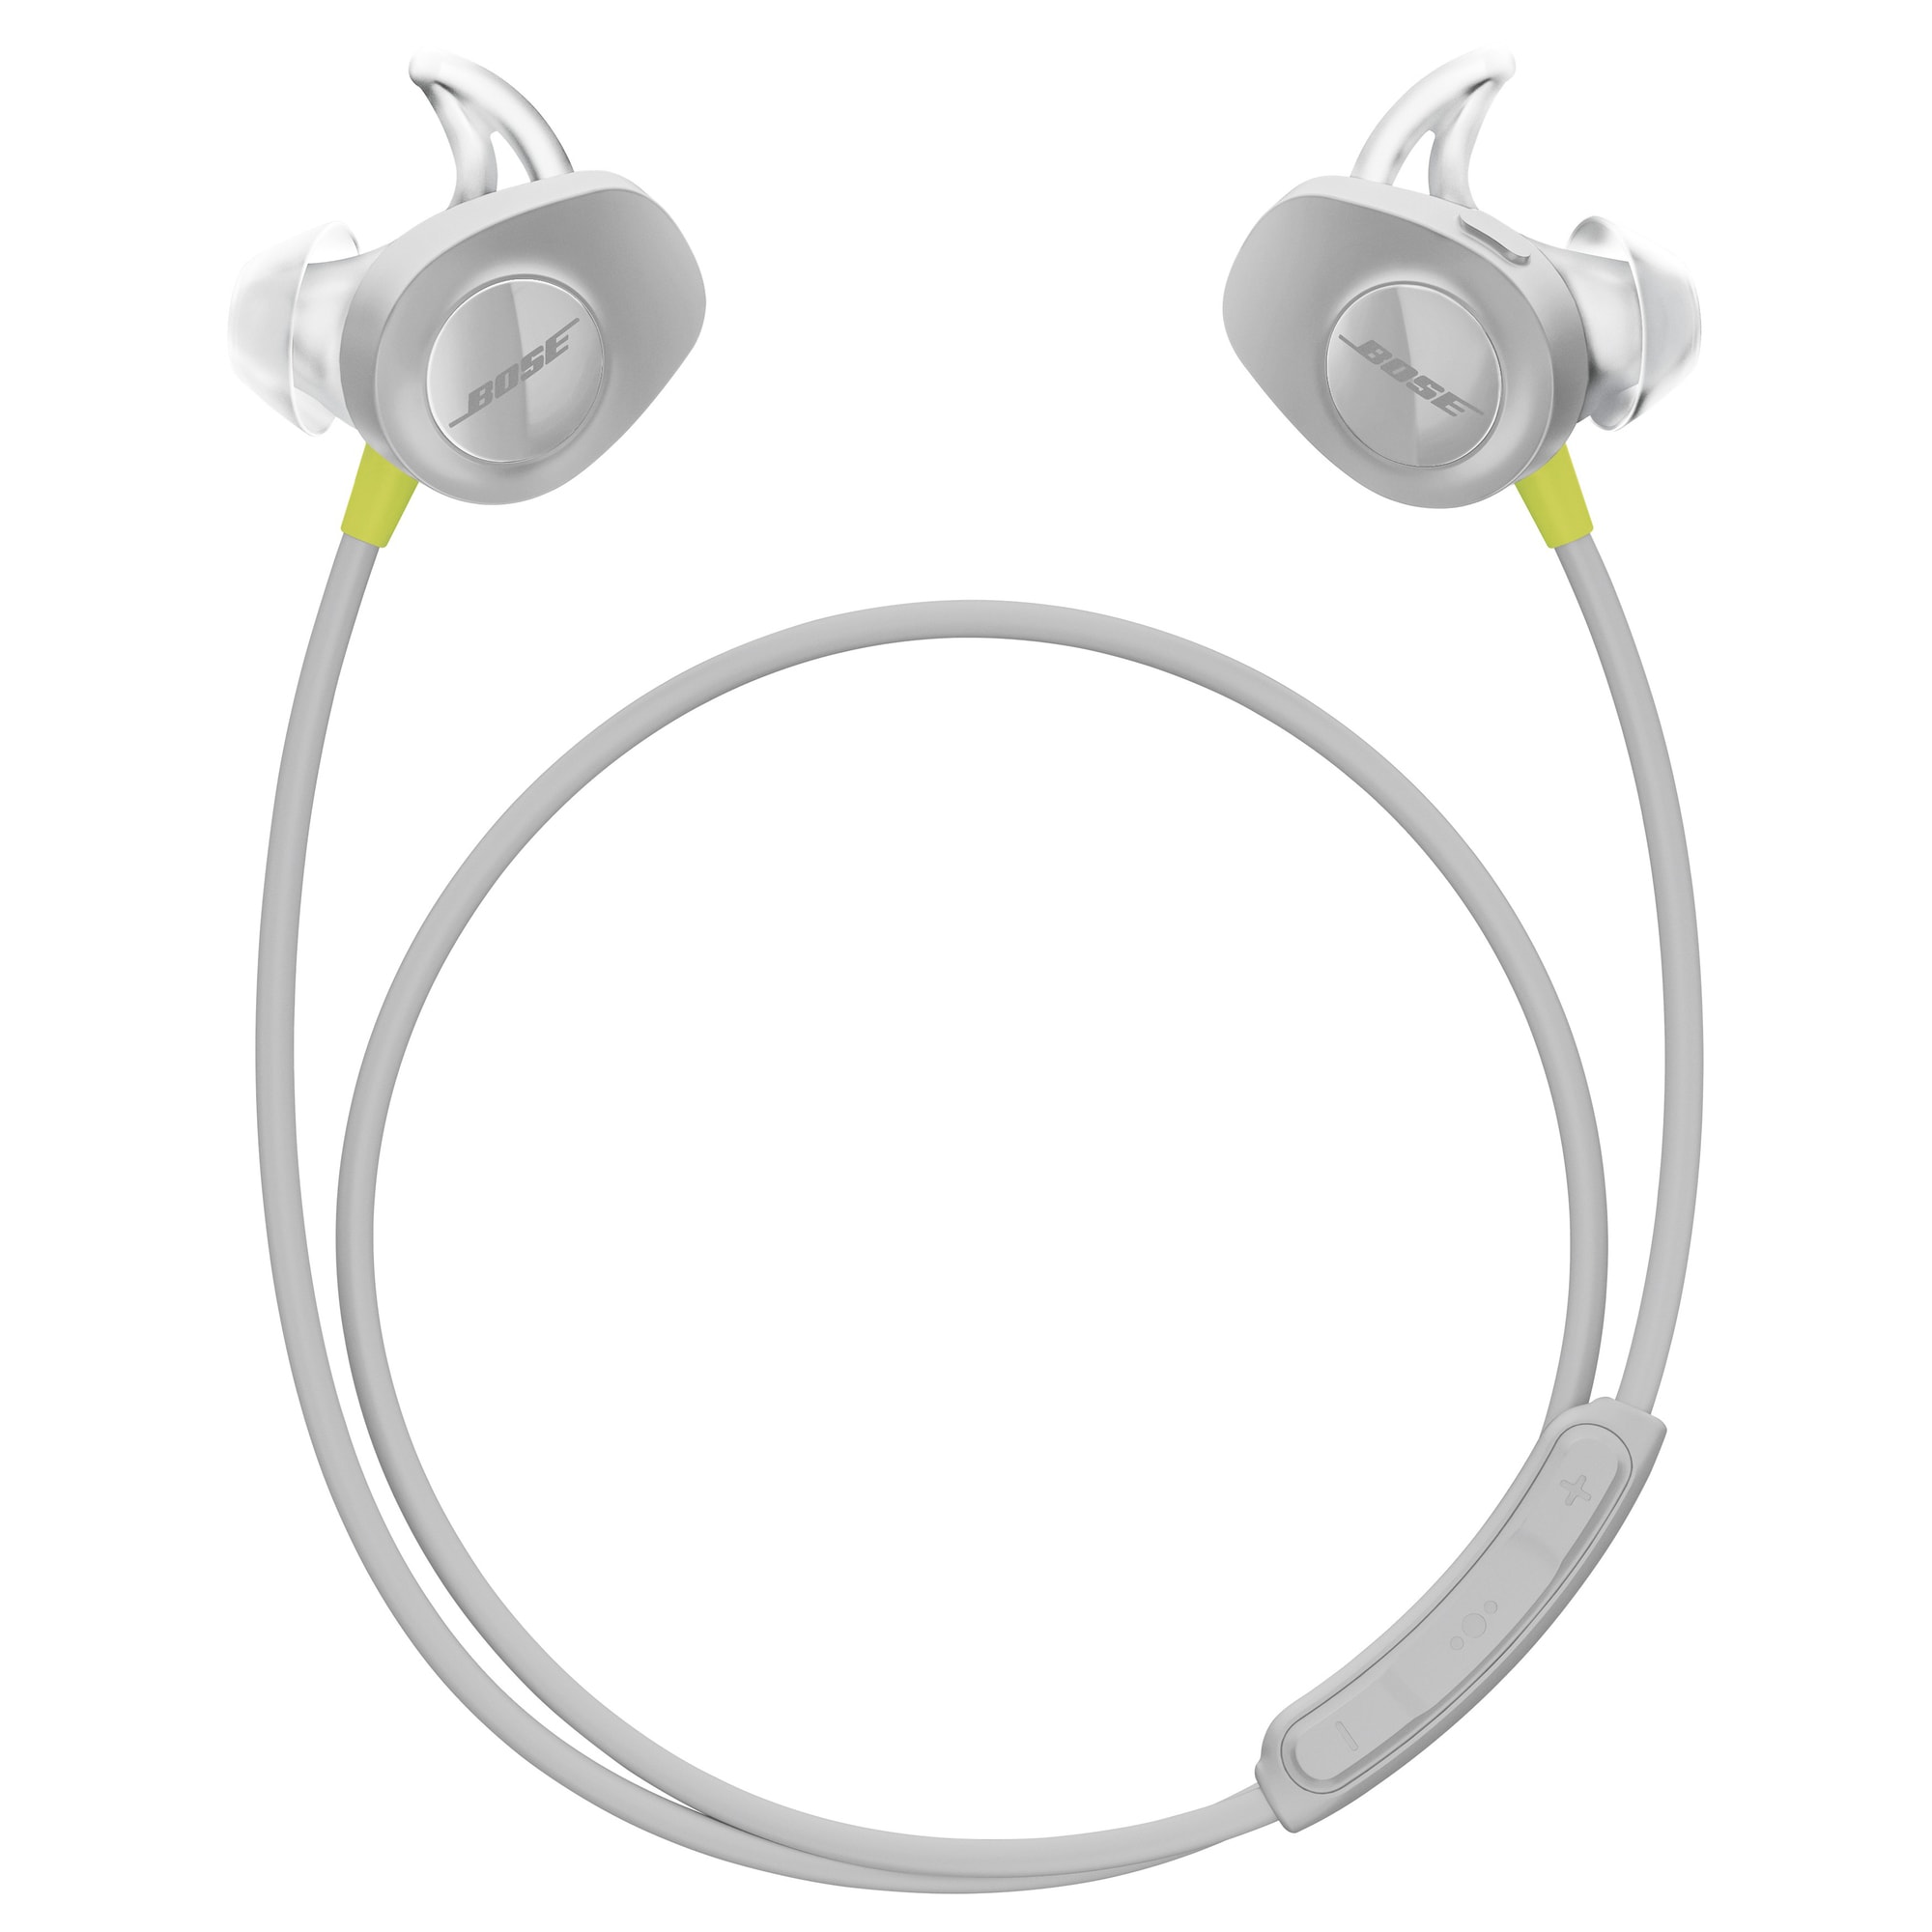 Bose SoundSport trådløse hodetelefoner (gul) - Elkjøp